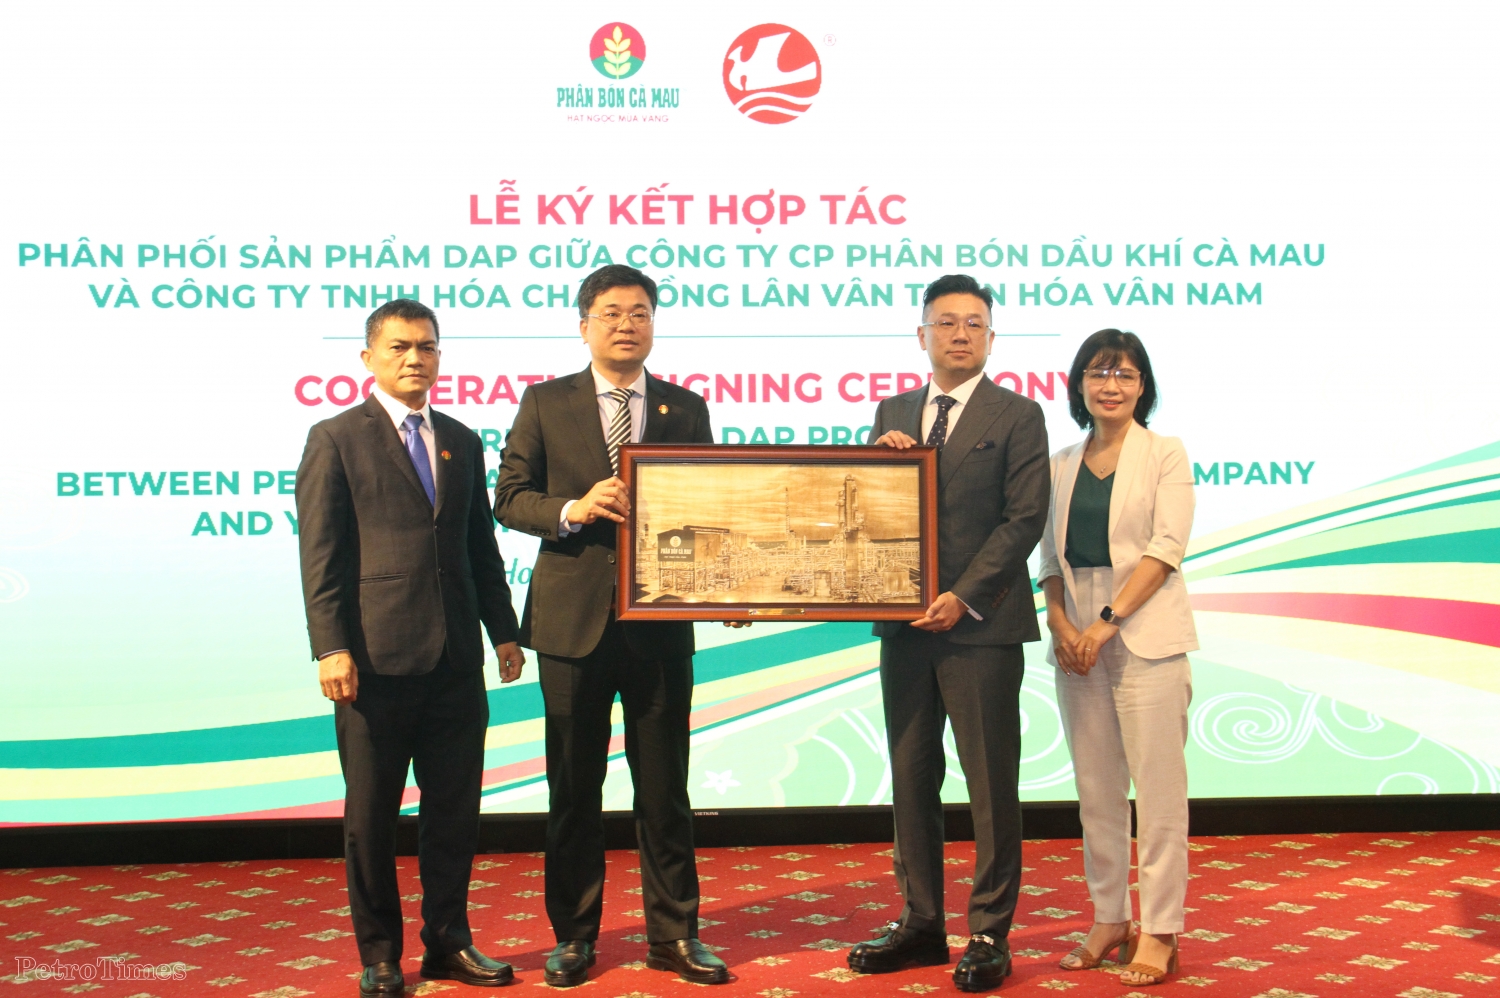 PVCFC ký kết hợp tác phân phối sản phẩm DAP với Tập đoàn Hoá chất Vân Thiên Hoá